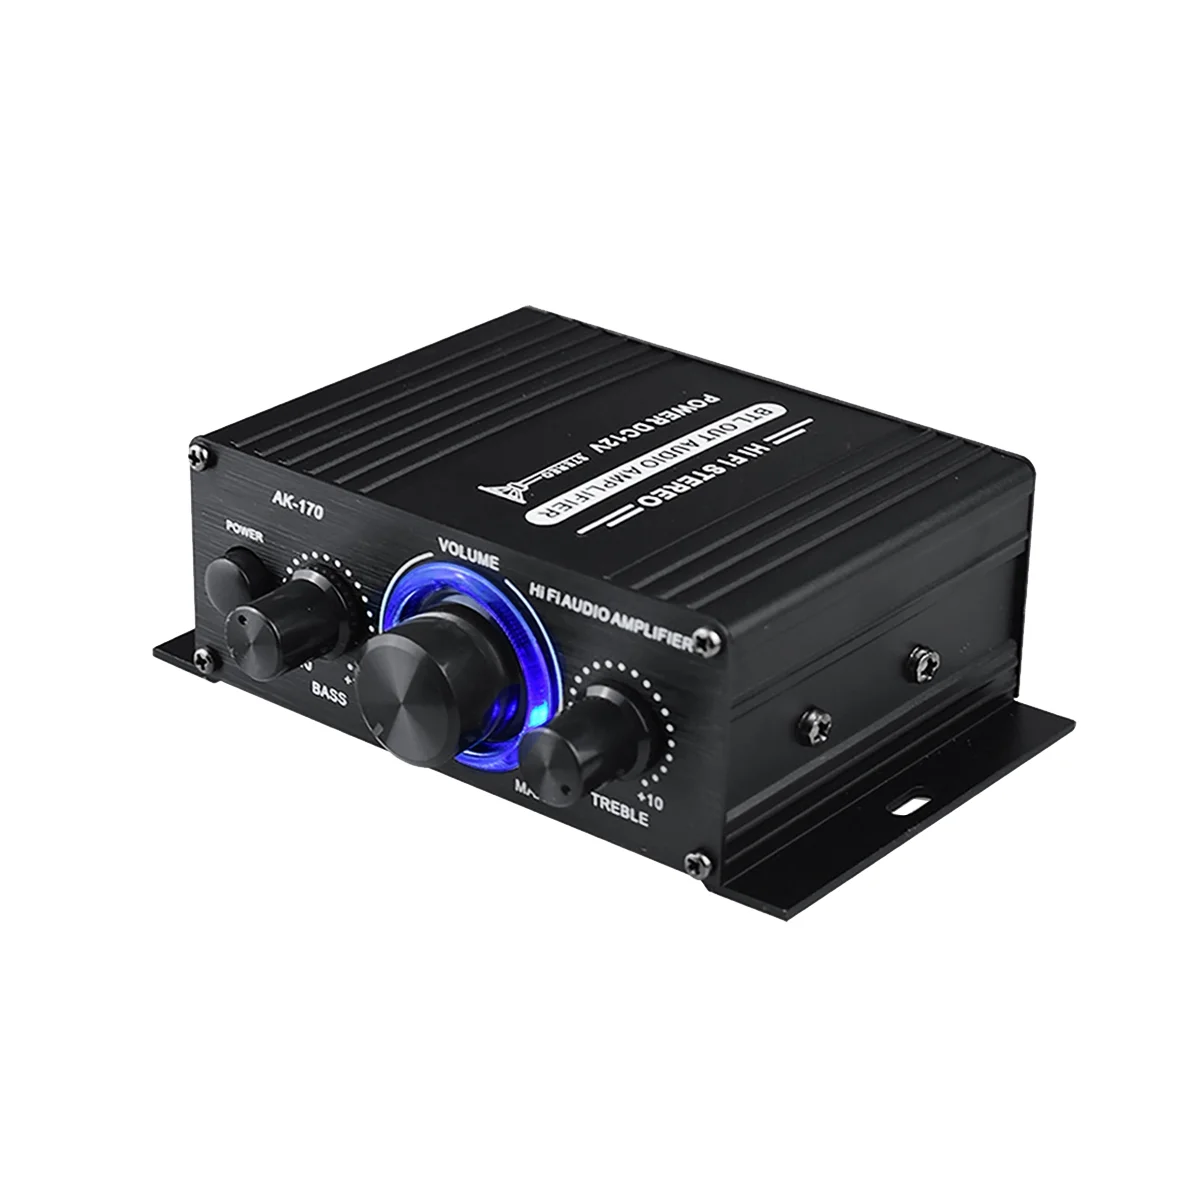 

AK-170 Audio Power Amplifier Wireless HiFi Stereo Audio Power Amplifier 200W+200W with RCA Input Home Car Amplifier